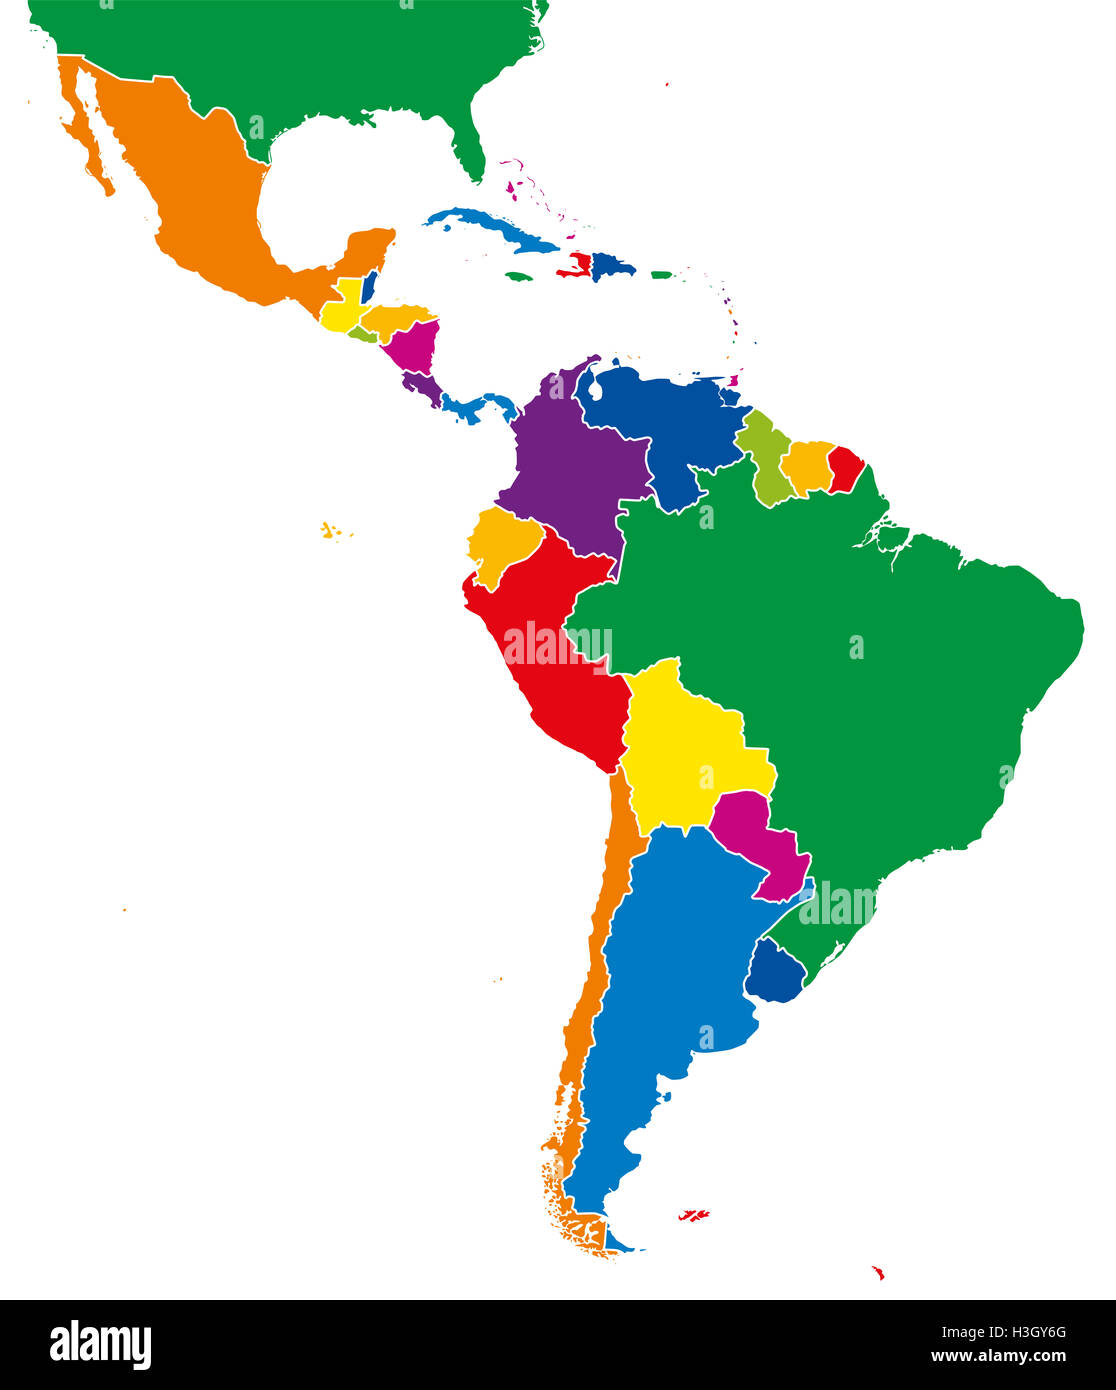 America Latina singola mappa degli stati. Tutti i paesi in diverse piena di colori intensi e con i confini nazionali. Foto Stock